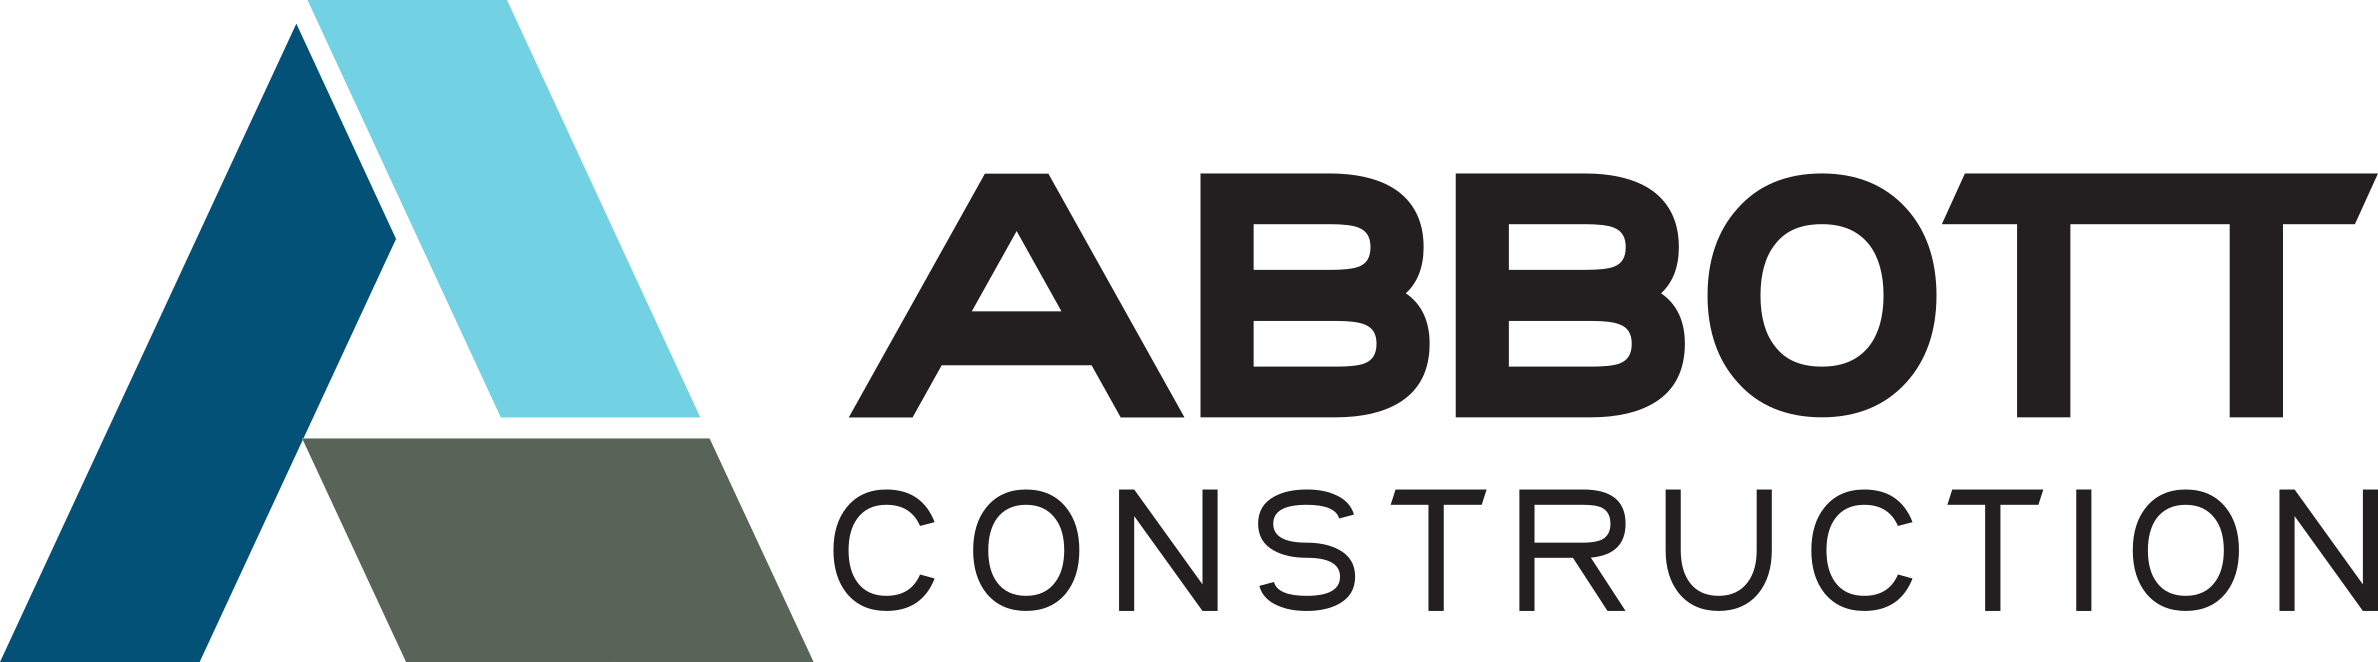 Abbott Construction Logo